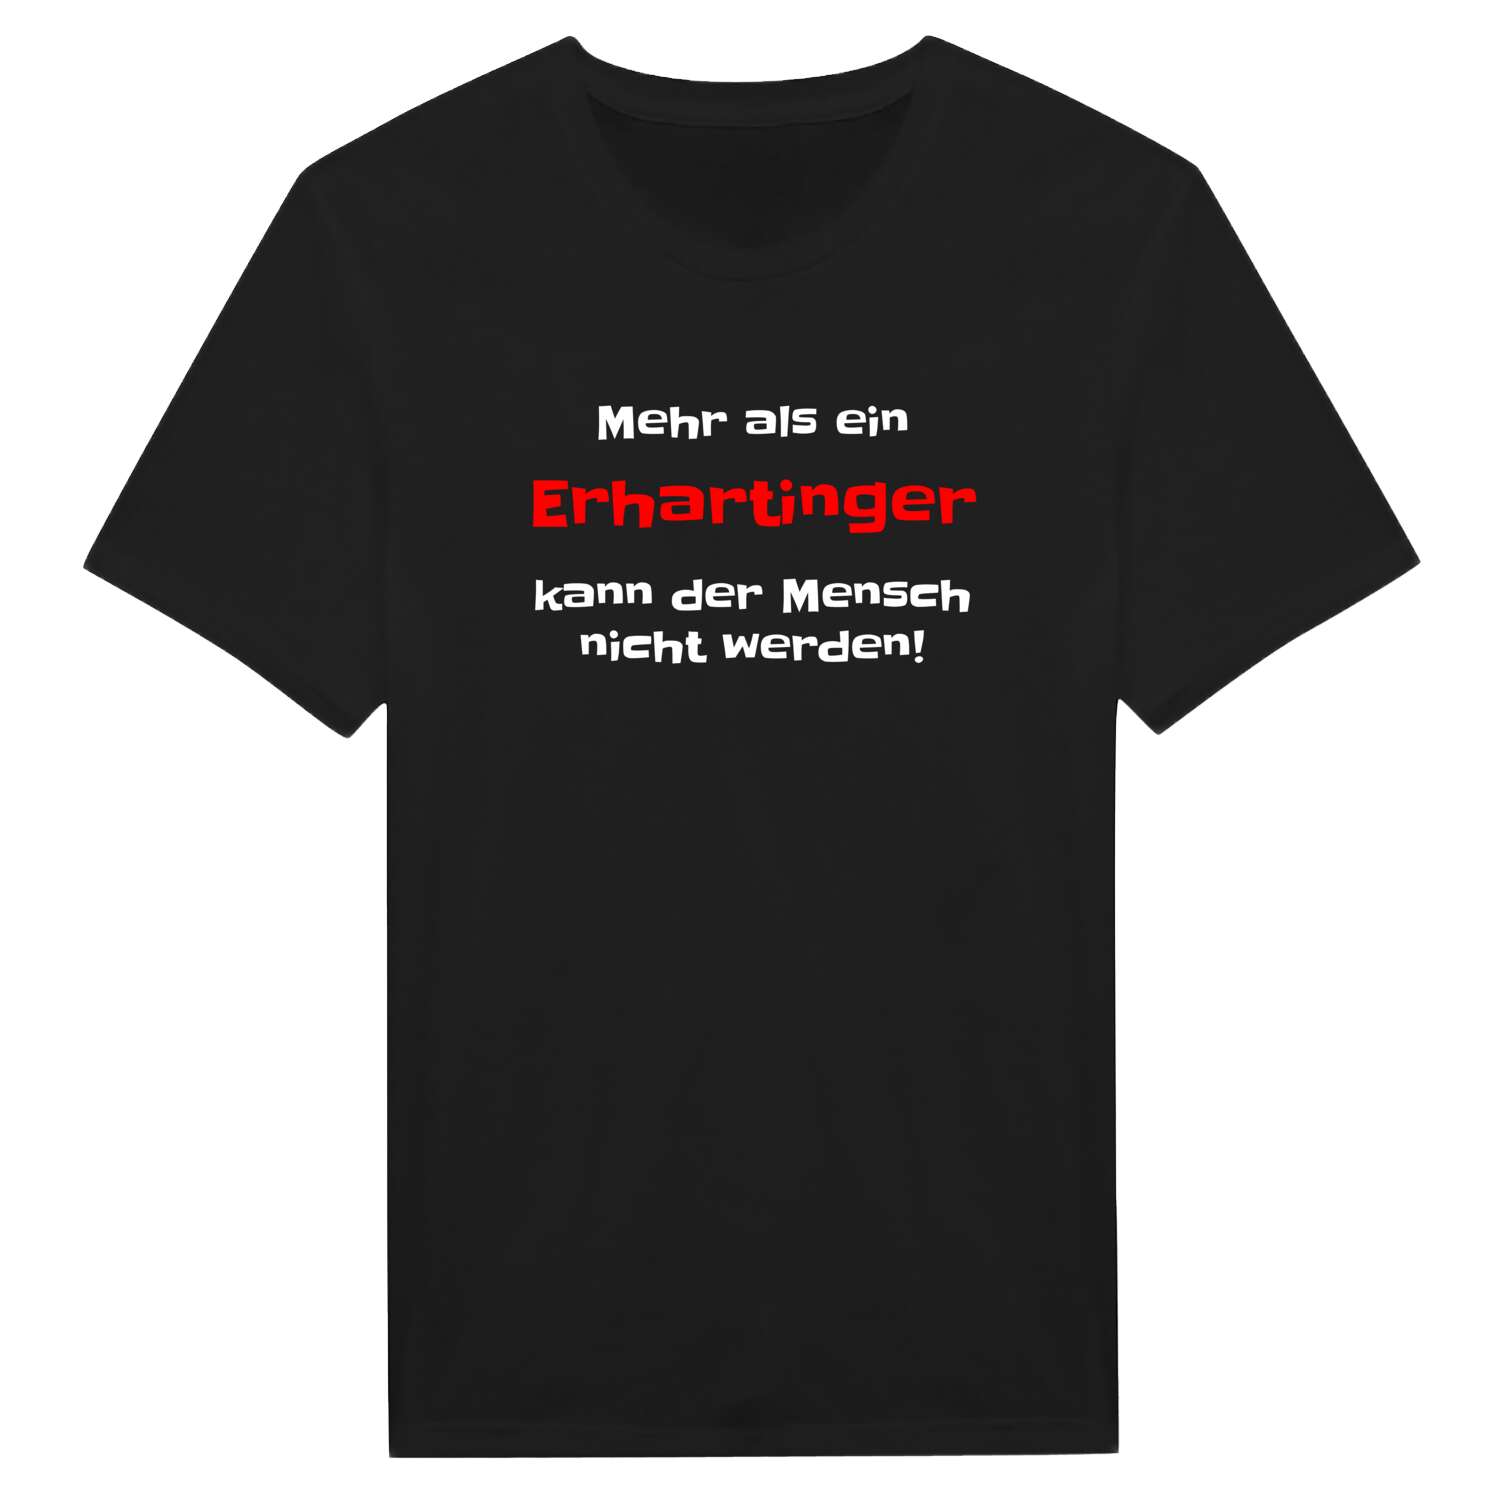 Erharting T-Shirt »Mehr als ein«